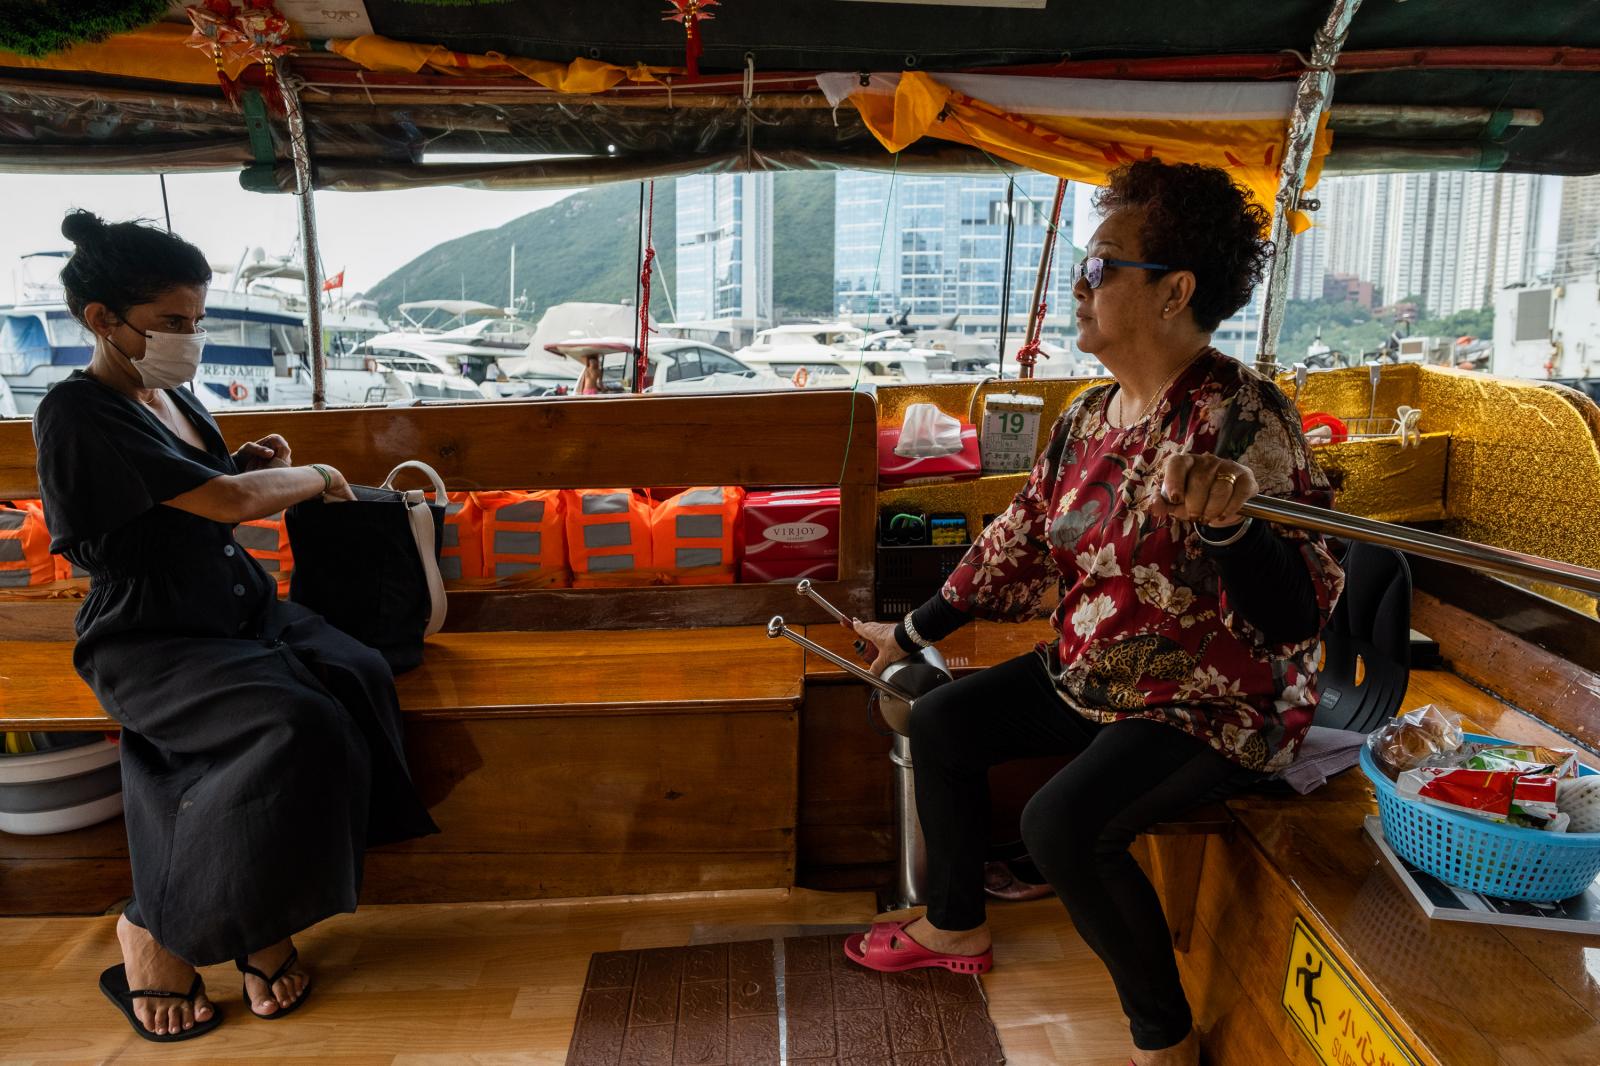 The price for a sampan ride ran...uro). Hong Kong, November 2020.